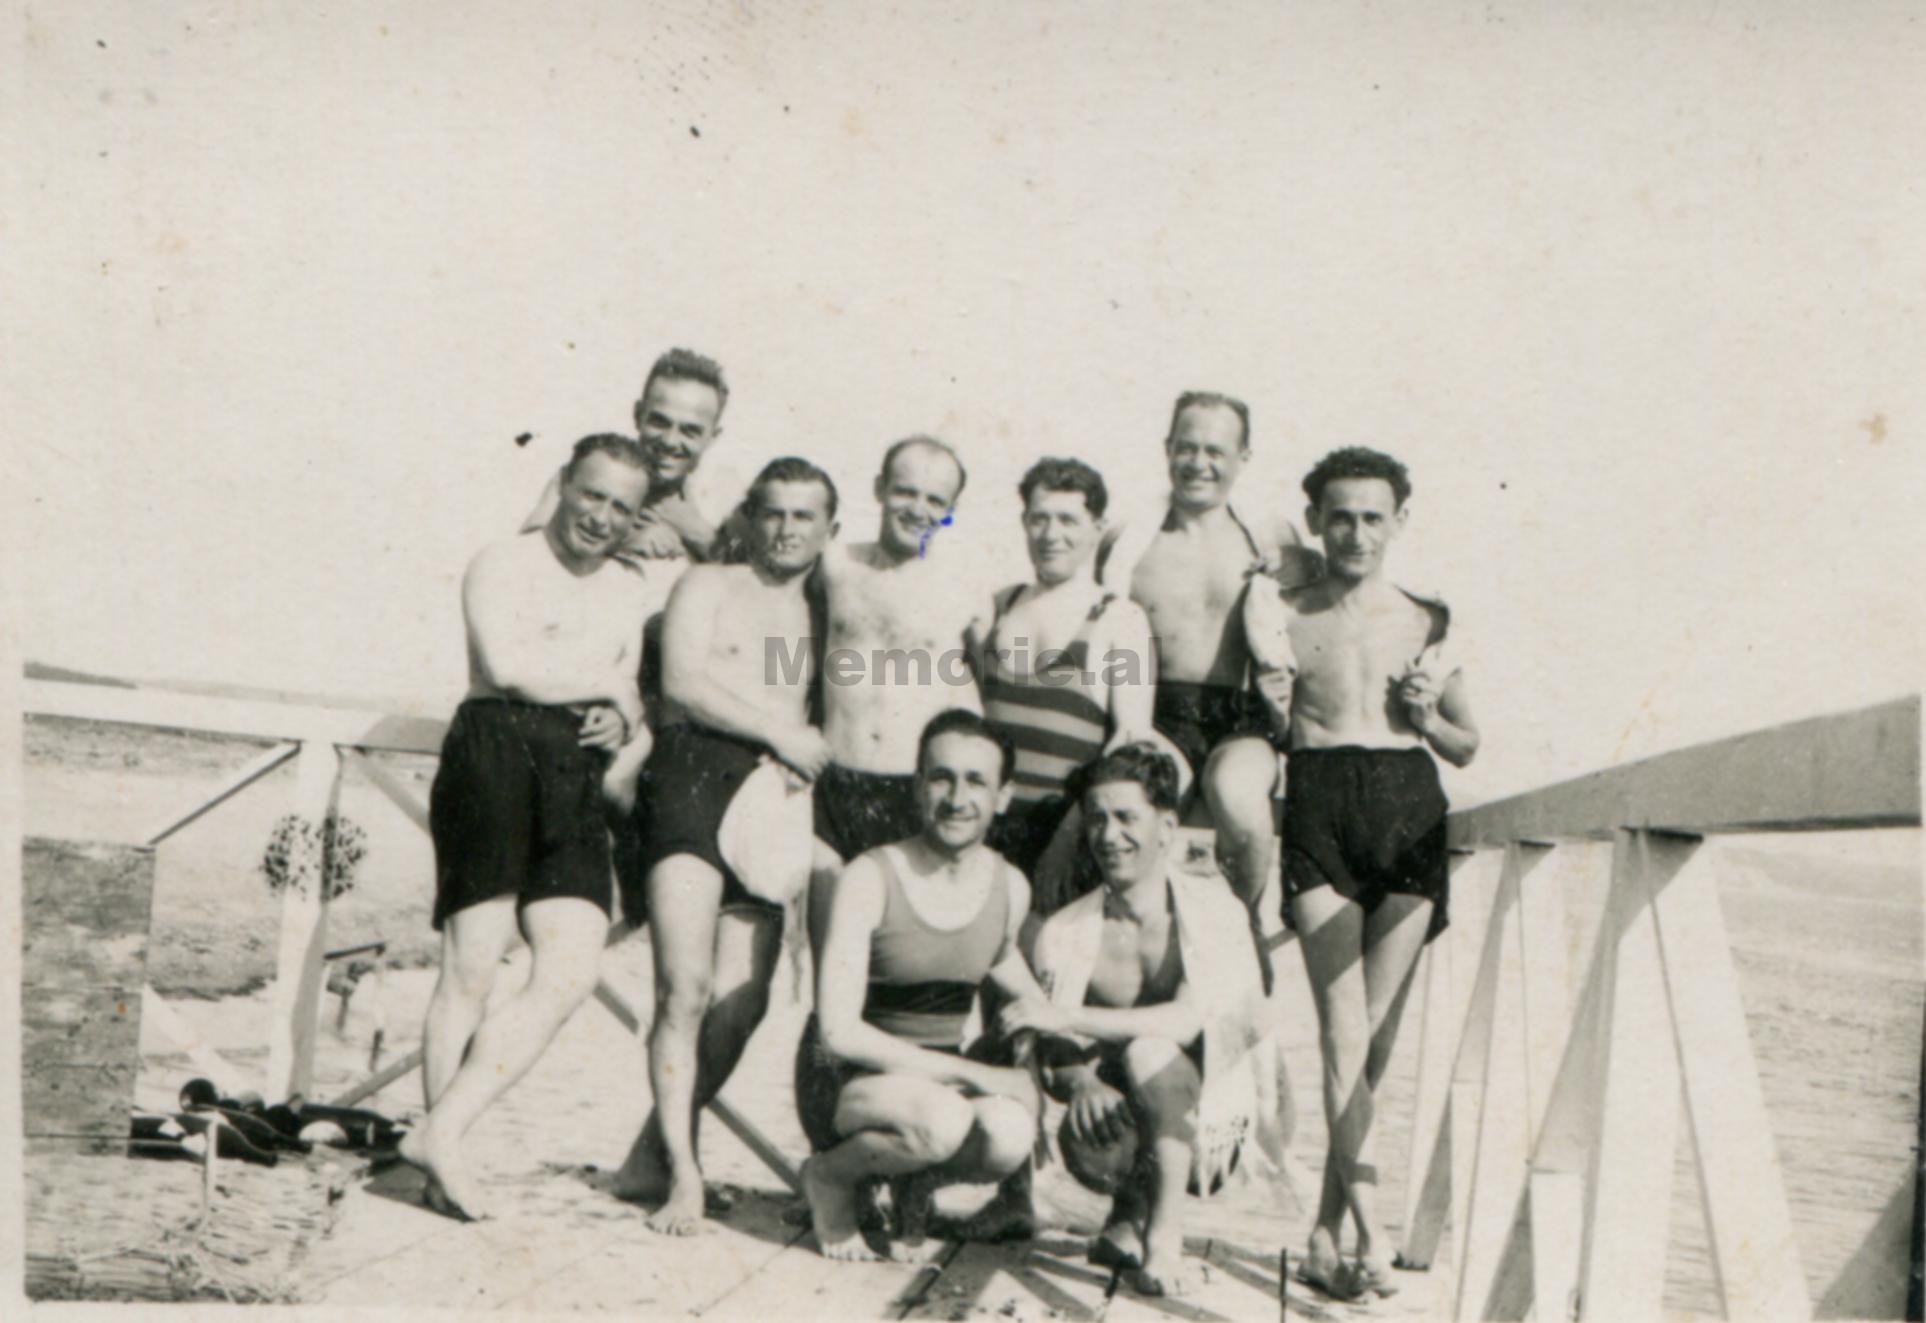 Sokrat-Dodbiba-dhe-Peter-Radiqi-ne-plazhe-me-shoqerine-1928